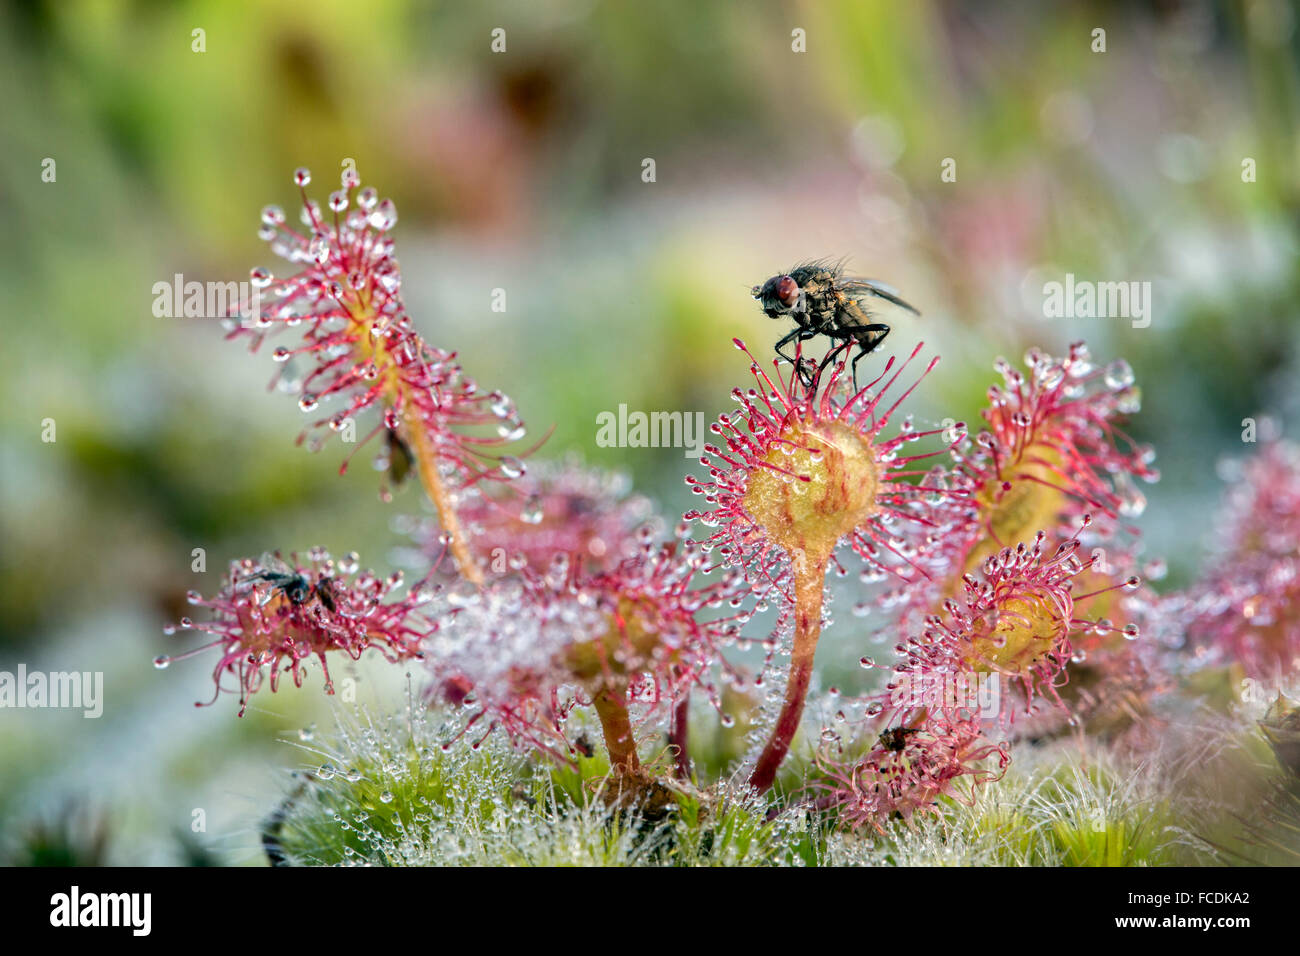 Pays-bas, Bussum, réserve naturelle Zanderij. Cruysbergen Droséra. Plante avec des poils glanduleux collants insectes piège Fly Banque D'Images